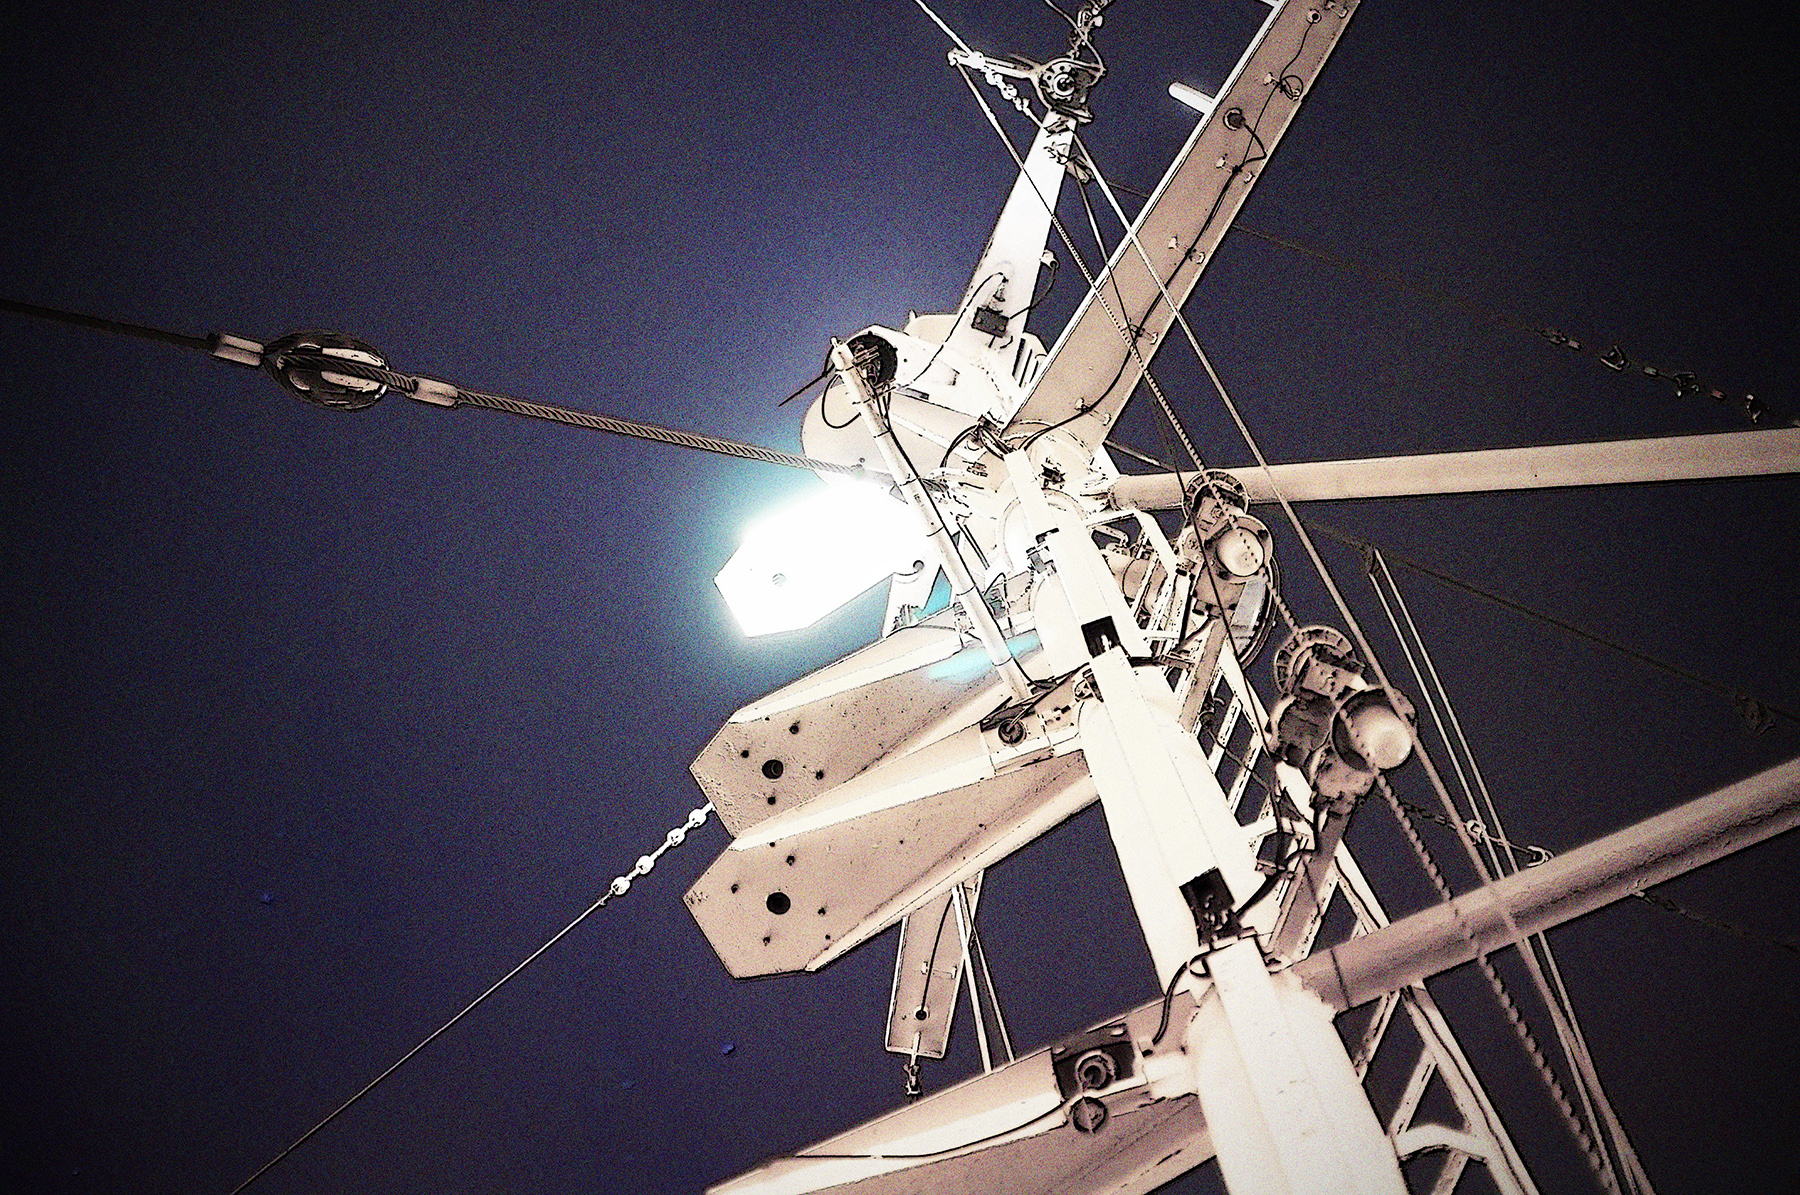 Der weiße Funkmast vor einem dunkelblauen Nachthimmel. Am Mast leuchtet eine helle, weiße Lampe.